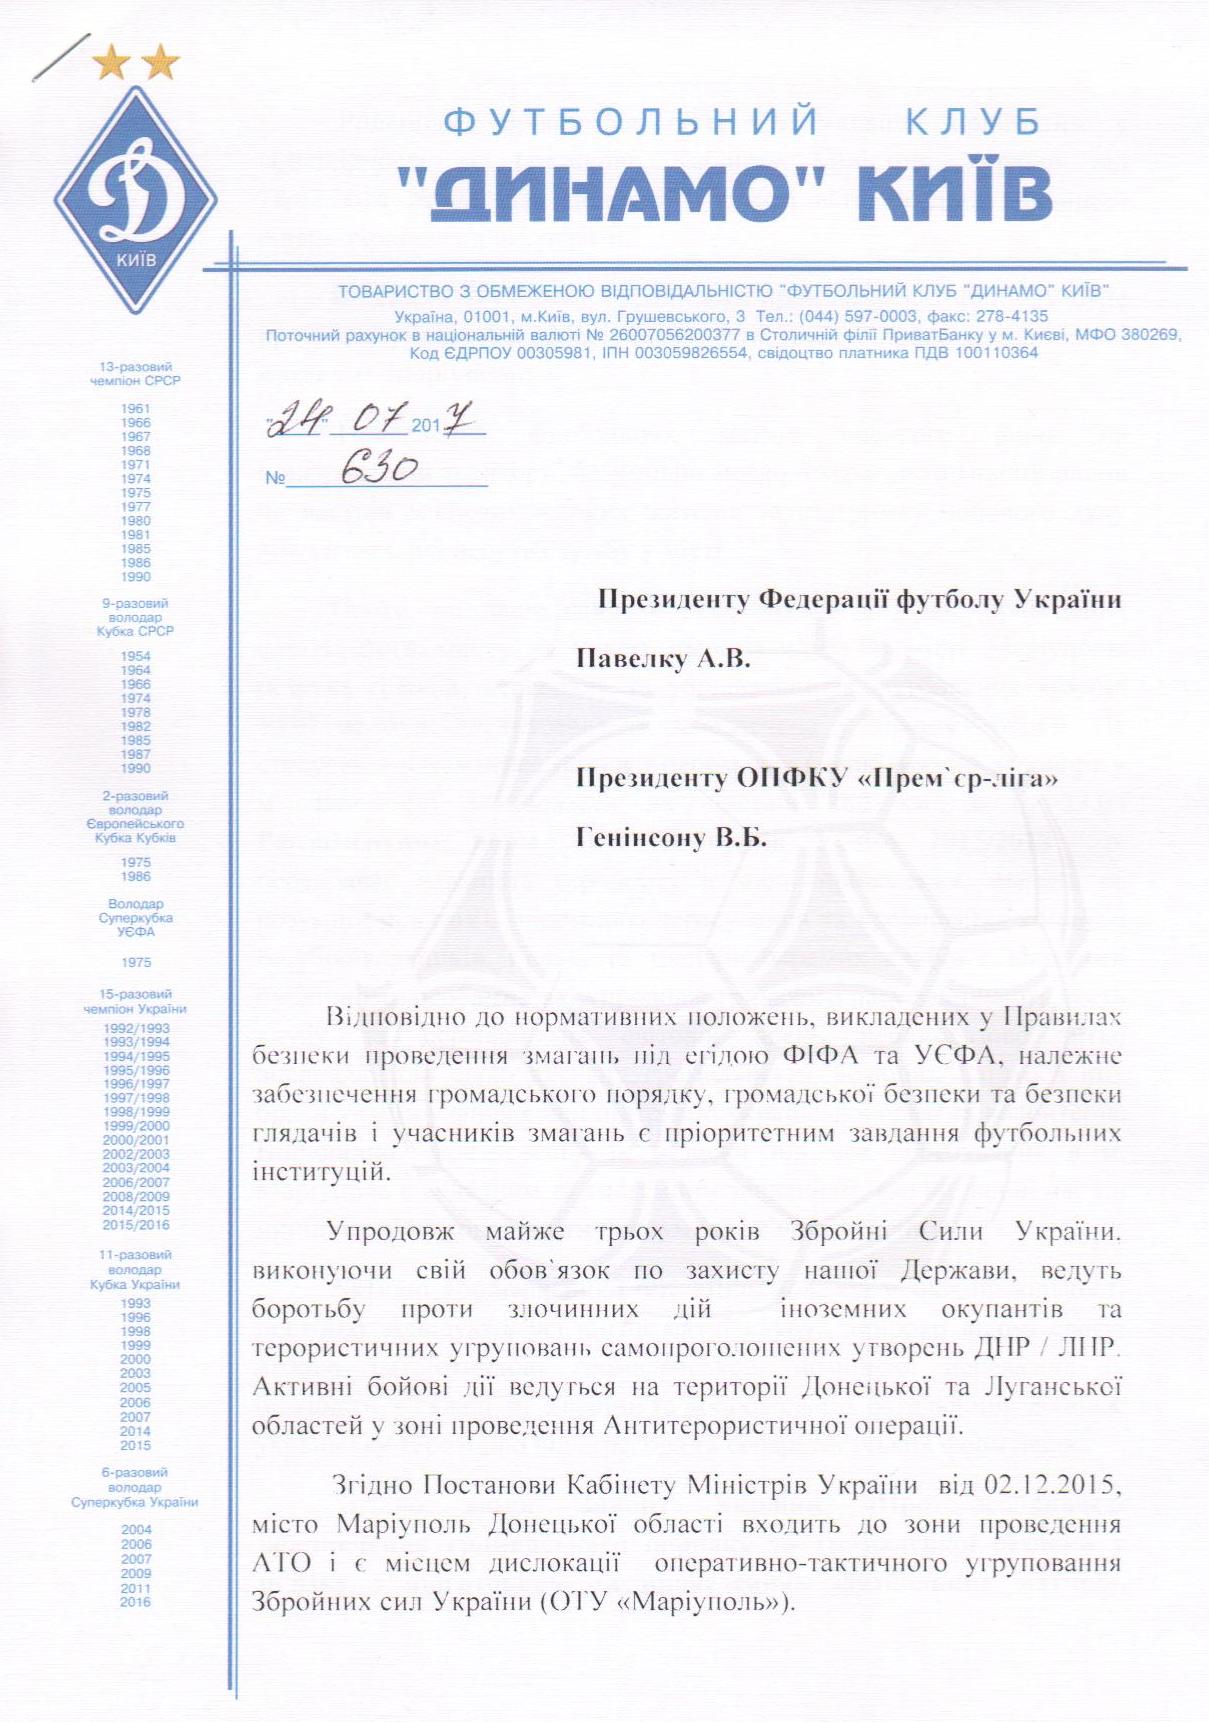 Владимира Сапонова отправили в отставку 